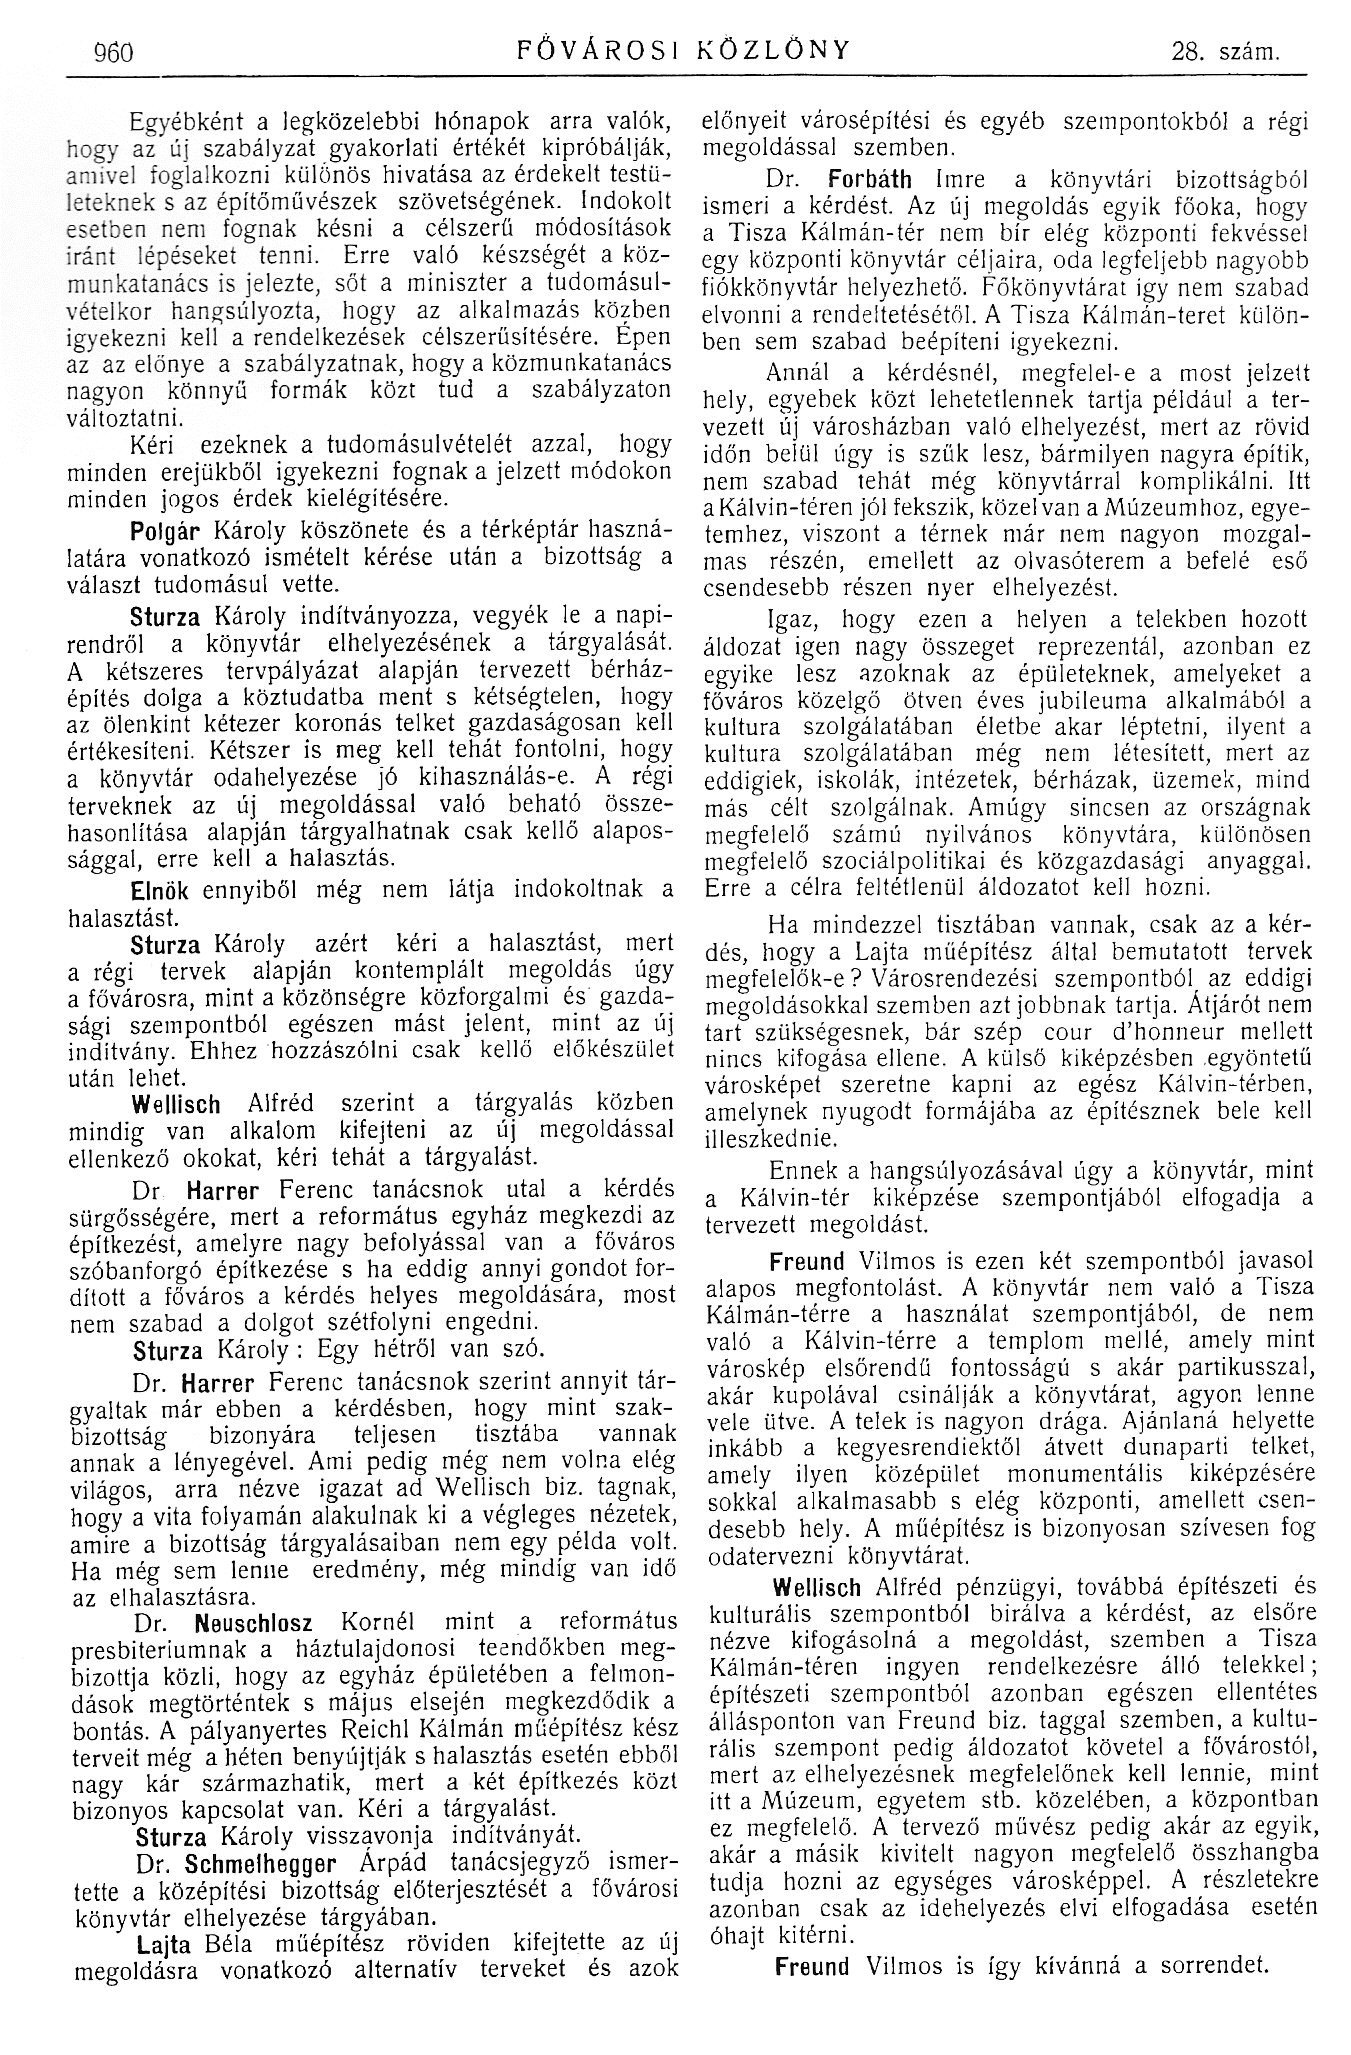 1914_04_03_Fővárosi Közlöny, 1914. 960. p. 